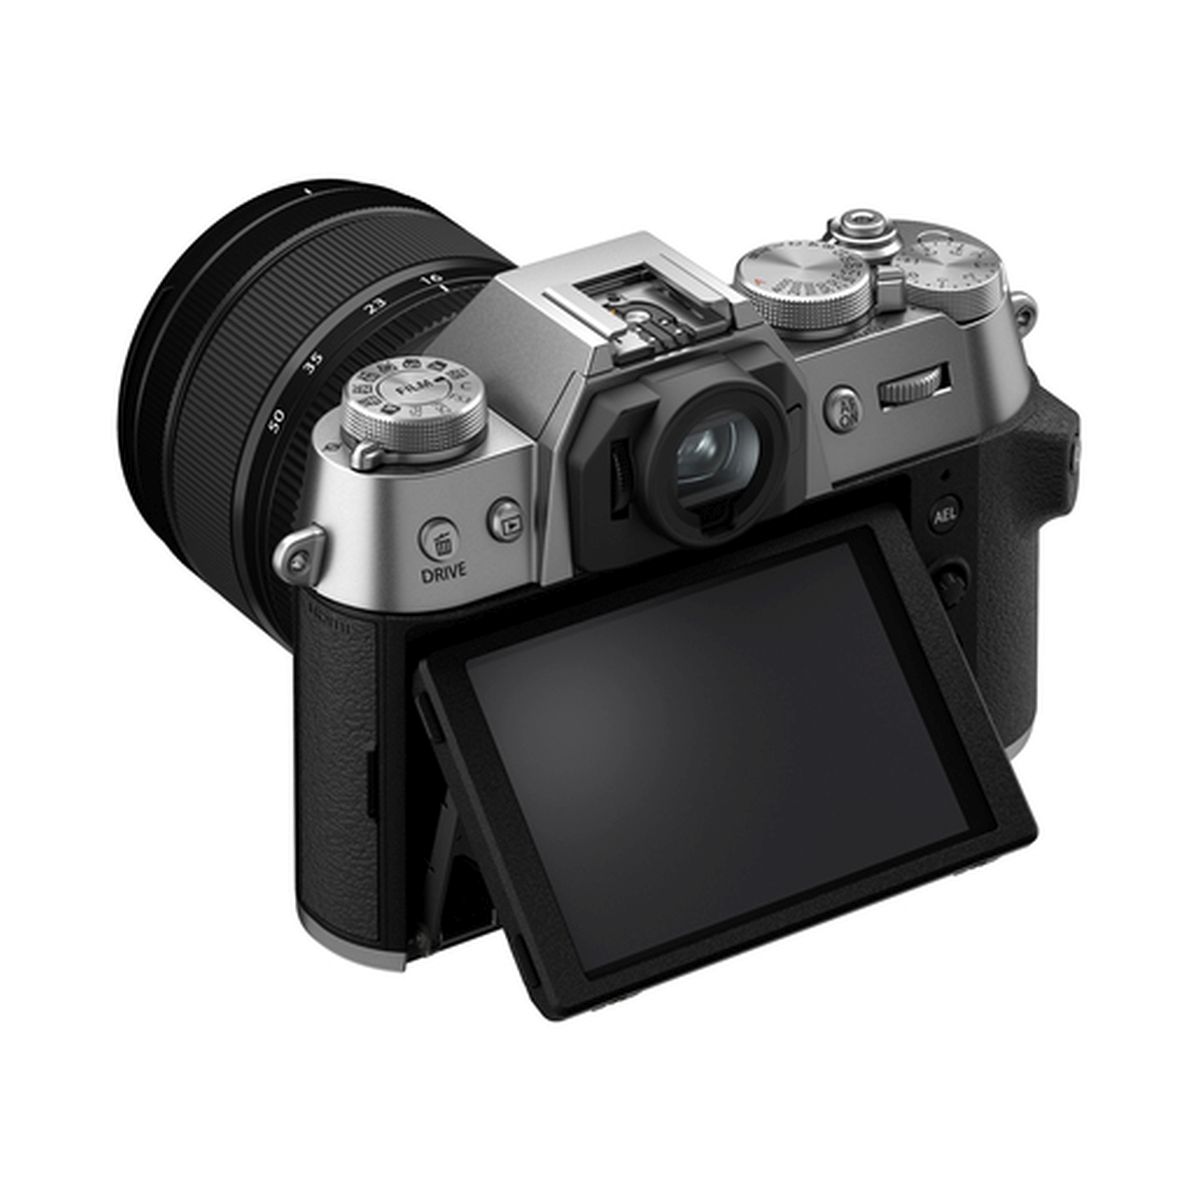 Fujifilm X-T50 Gehäuse Silber + Fujifilm 16-50 mm 1:2,8-4,8 XF R LM WR